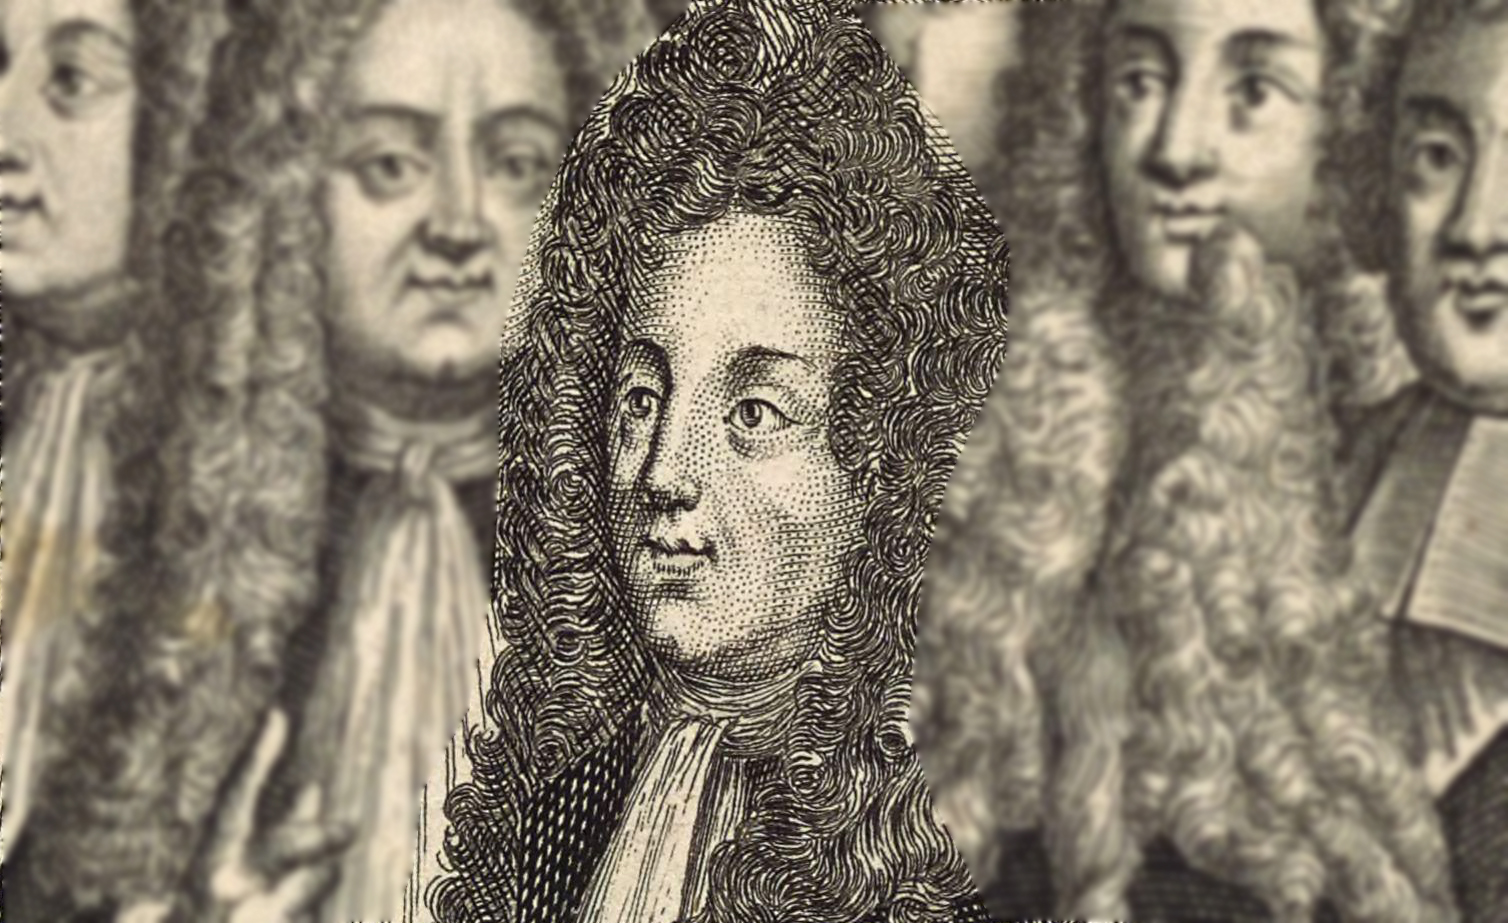 Accéder à la page "Saint-Simon, Louis de Rouvroy, duc de (1675-1755)"